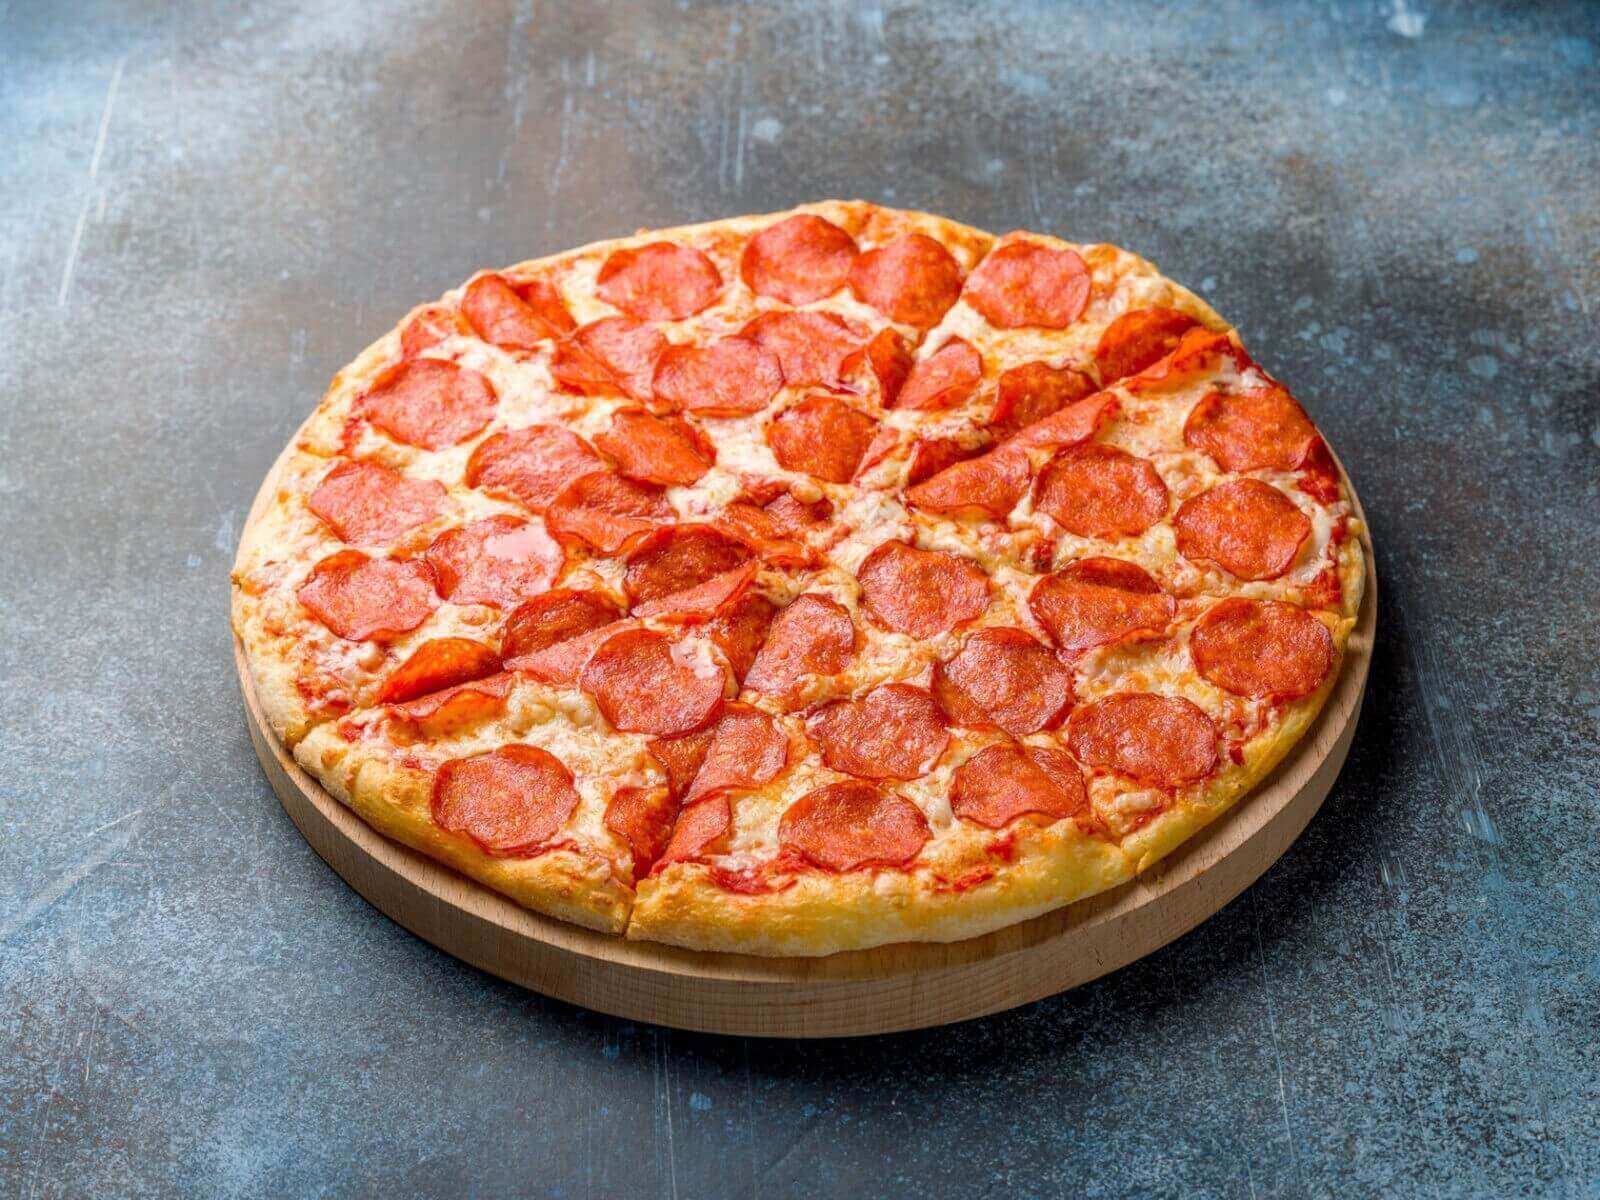 я здесь для обучения мне нужна половина из четырех пицц пепперони хорошая пицца отличная фото 8